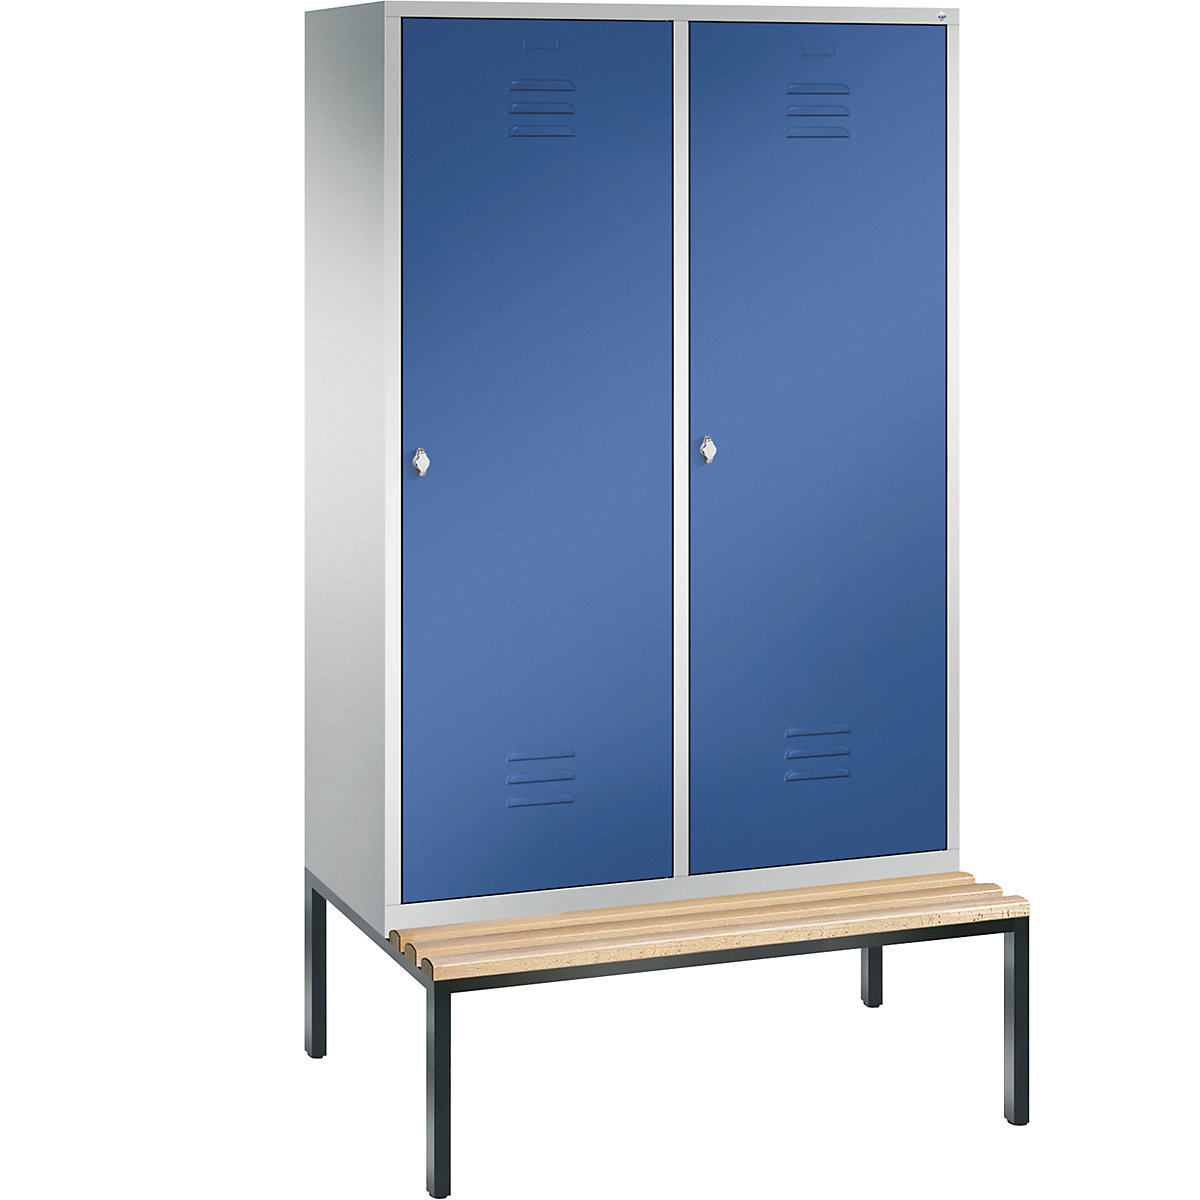 Šatní skříň s podstavnou lavicí CLASSIC s dveřmi přes 2 oddíly – C+P, 4 oddíly, šířka oddílu 300 mm, světlá šedá / enciánová modrá-11